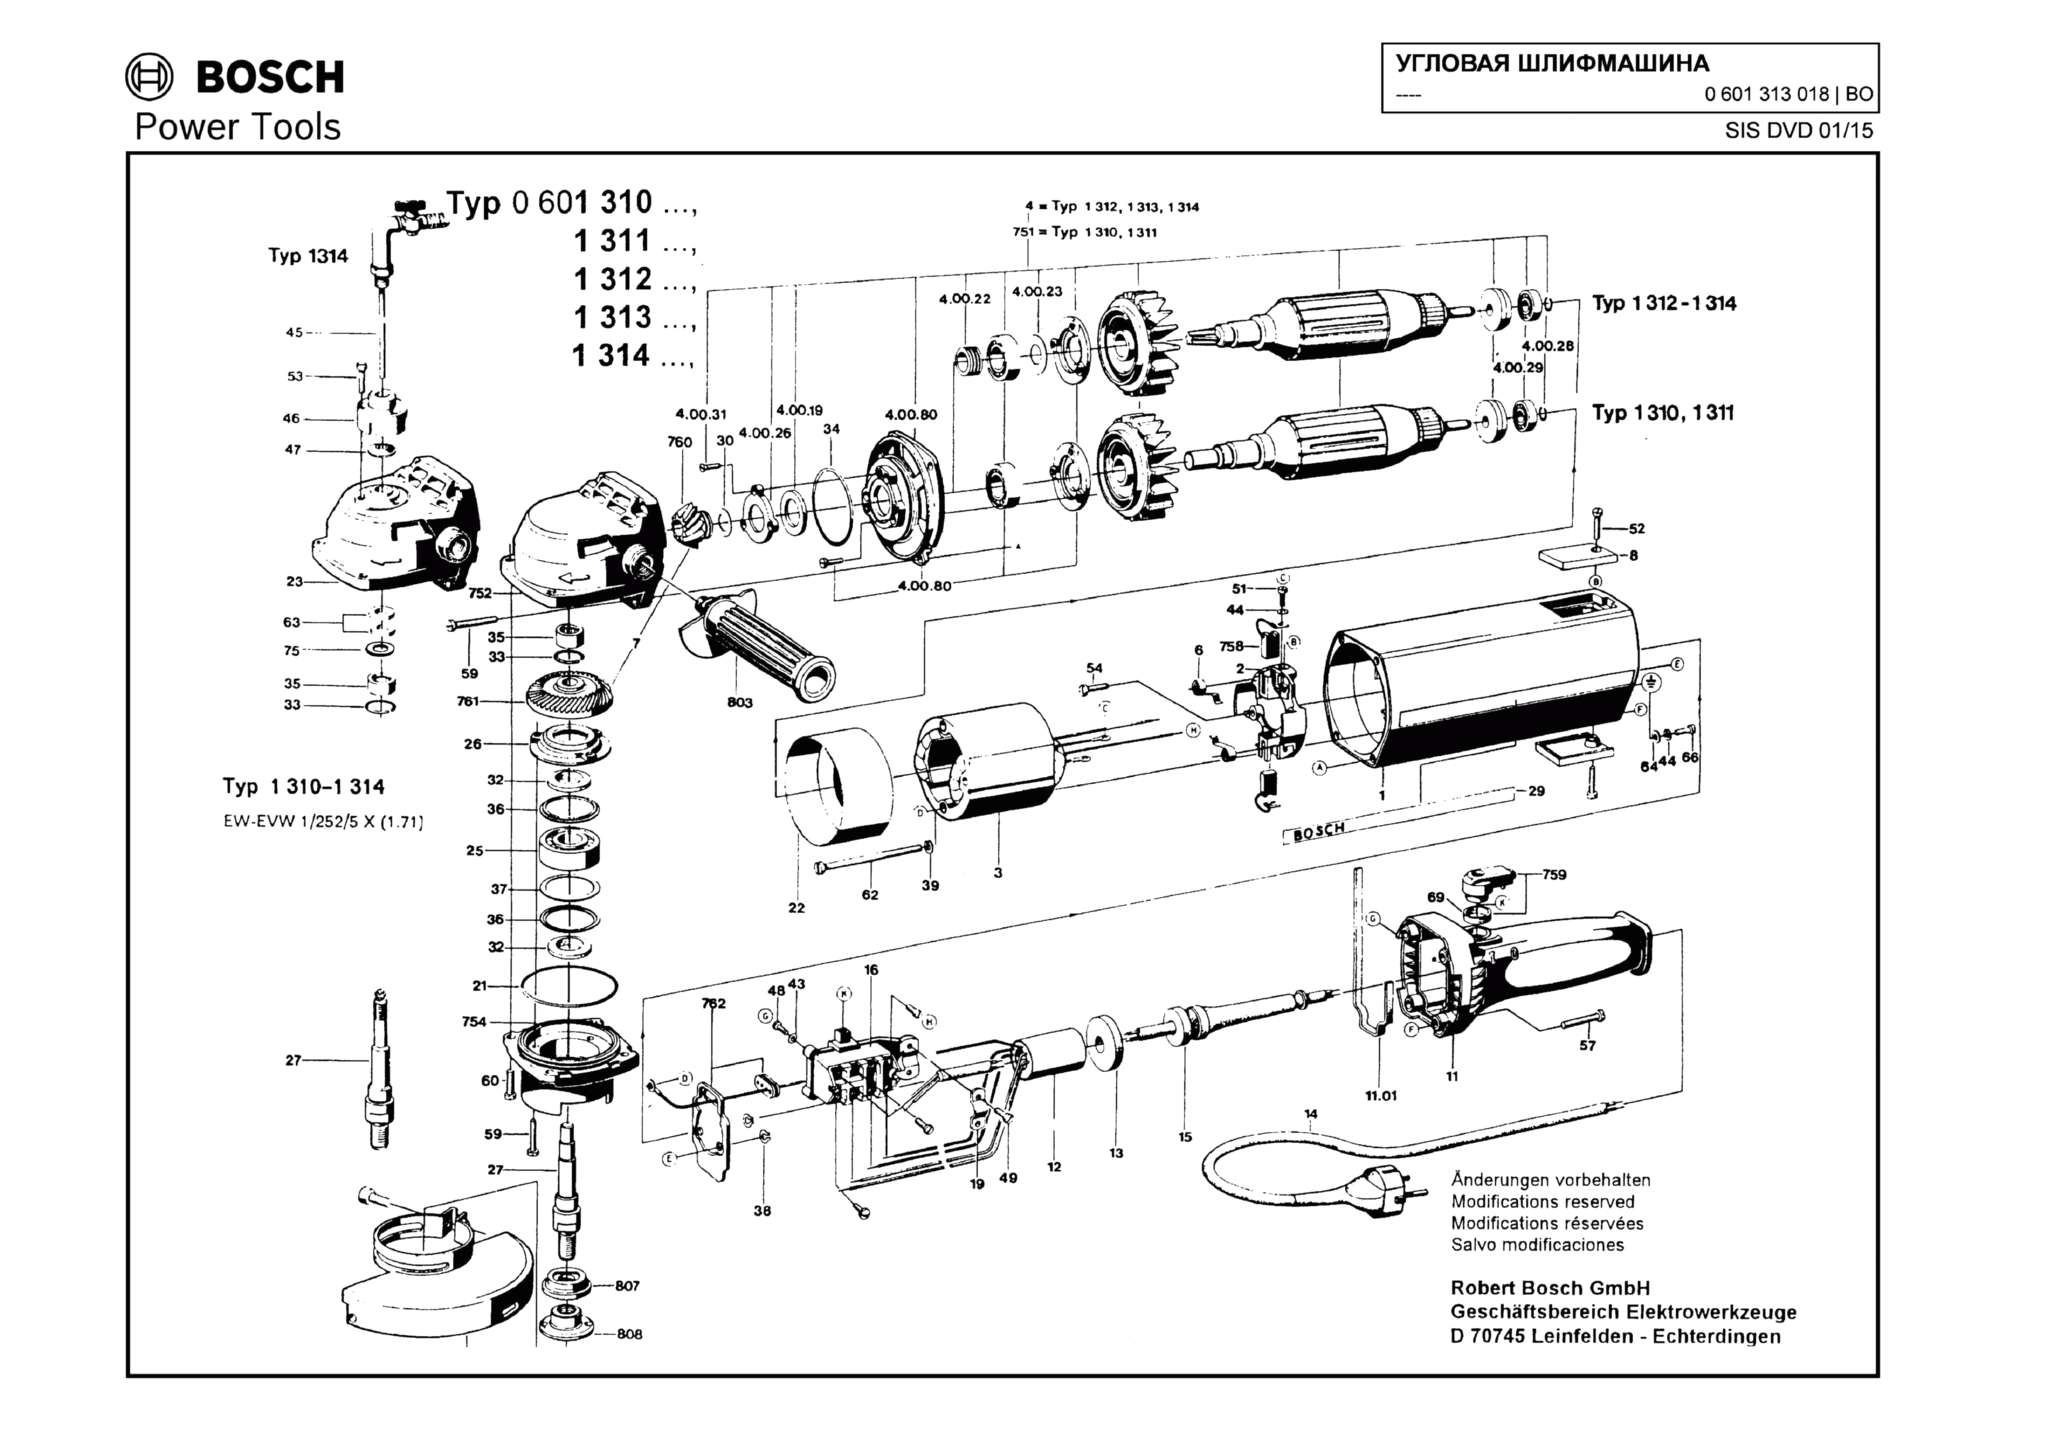 Запчасти, схема и деталировка Bosch (ТИП 0601313018)